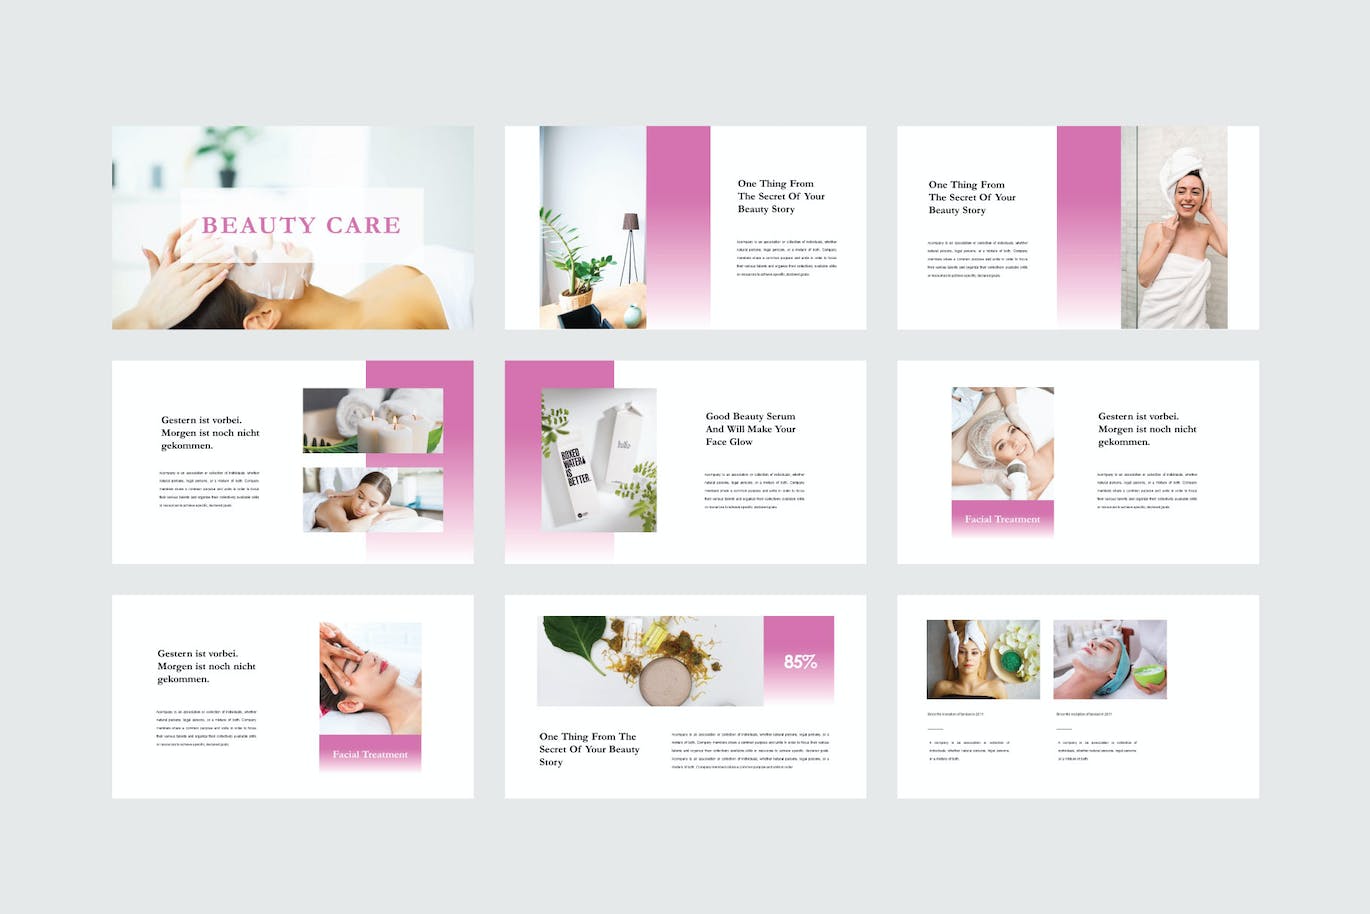 美容护理业务PPT素材 Beauty Care – PowerPoint Template 幻灯图表 第5张